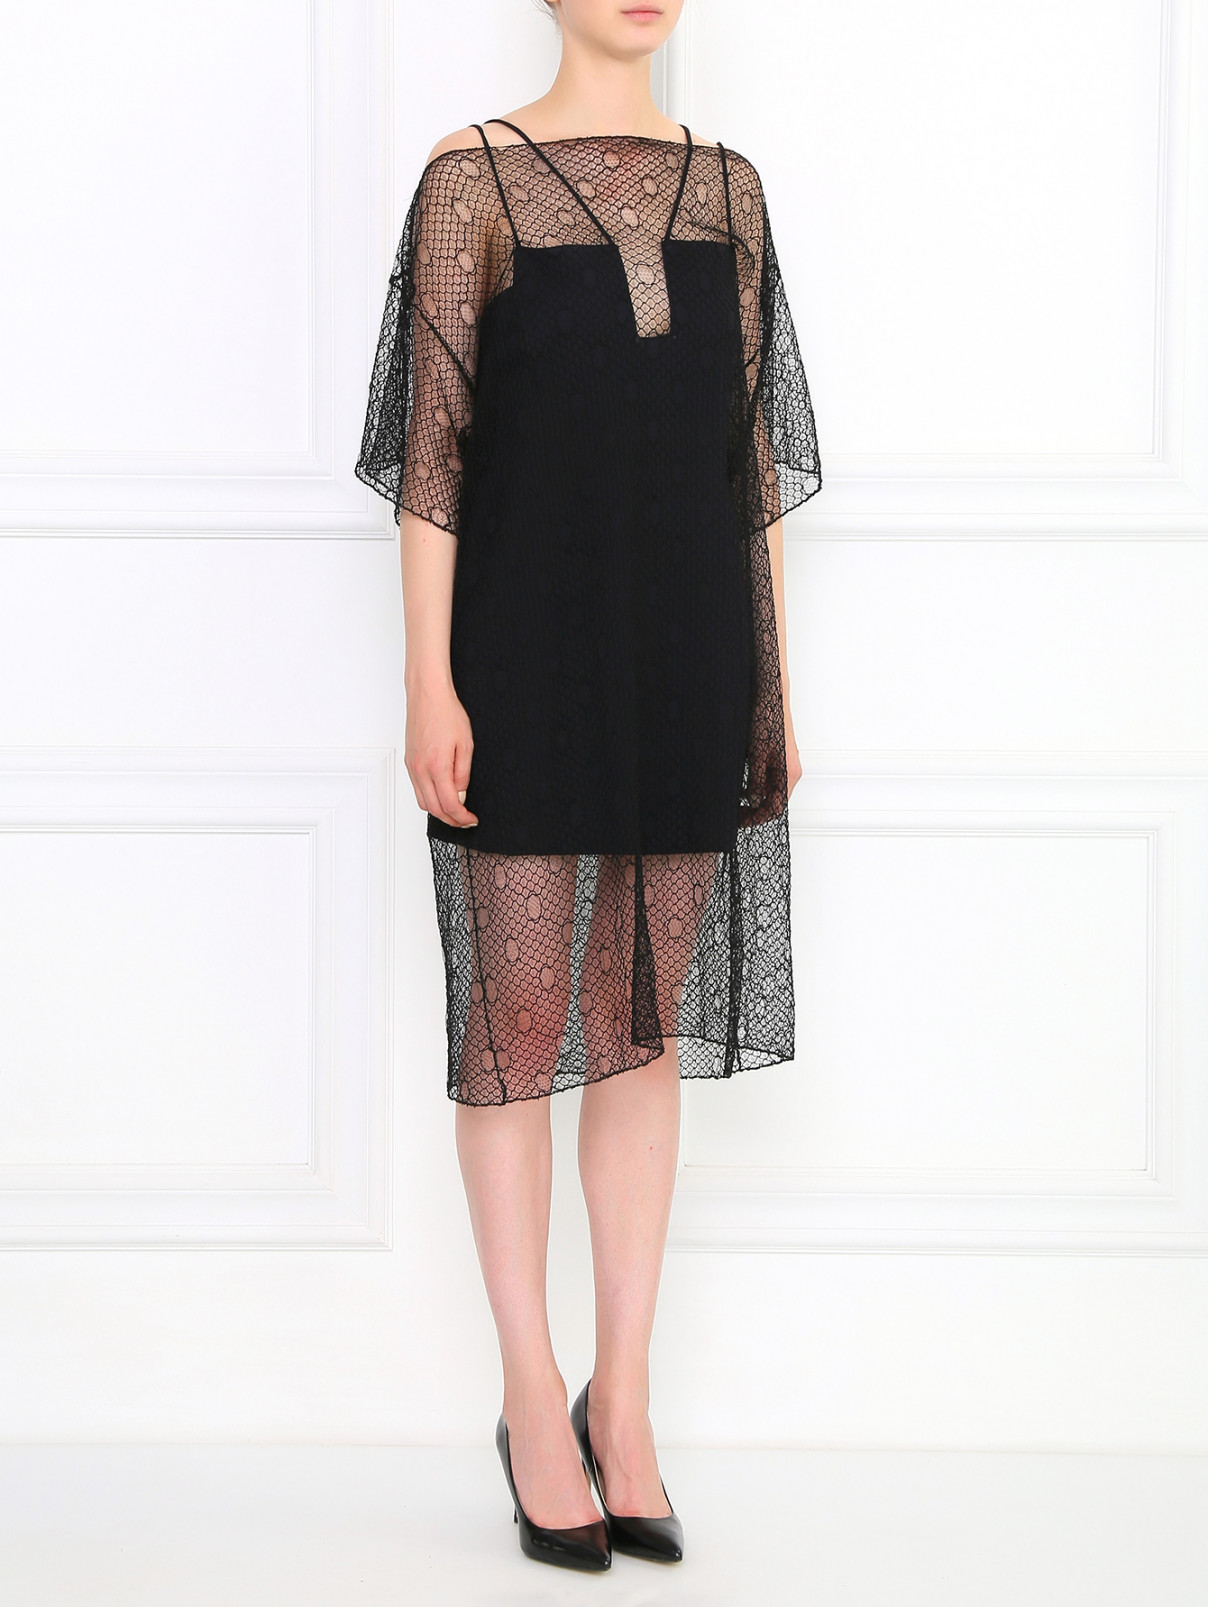 Мини-платье с кружевной  накидкой Jean Paul Gaultier  –  Модель Общий вид  – Цвет:  Черный